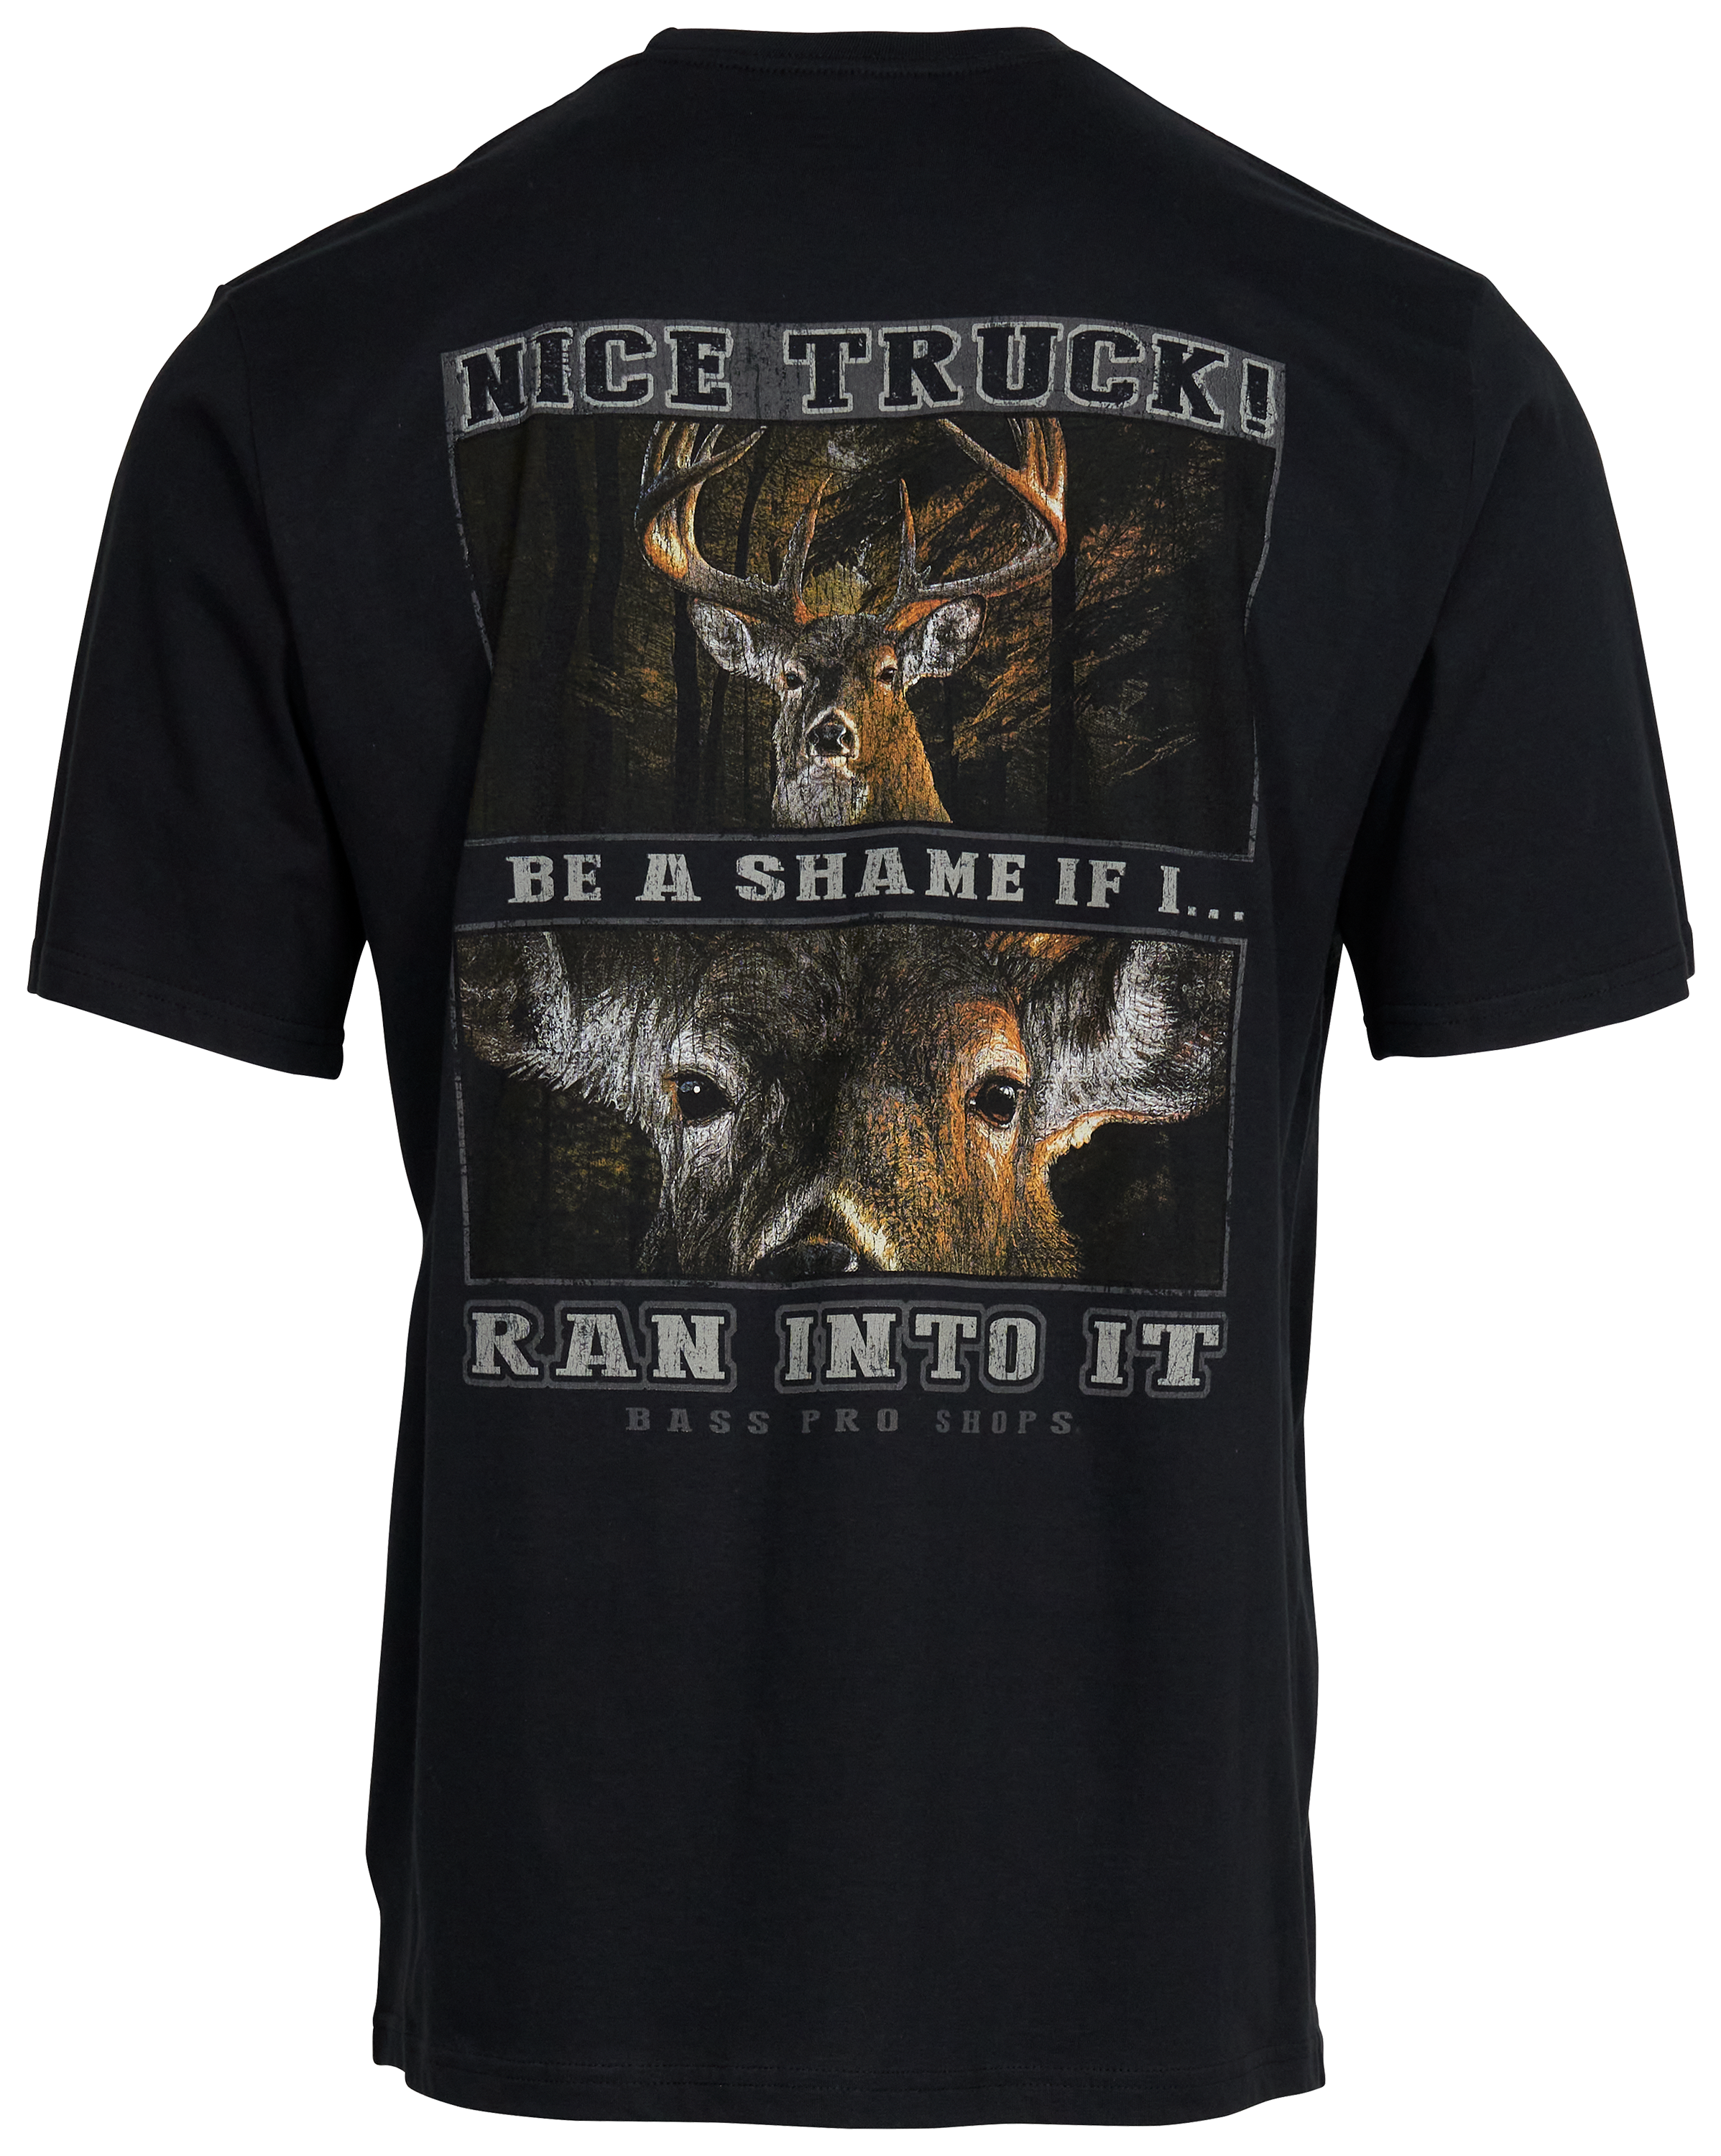 Bass Pro Shops Deer Truck Short-Sleeve T-Shirt for Men